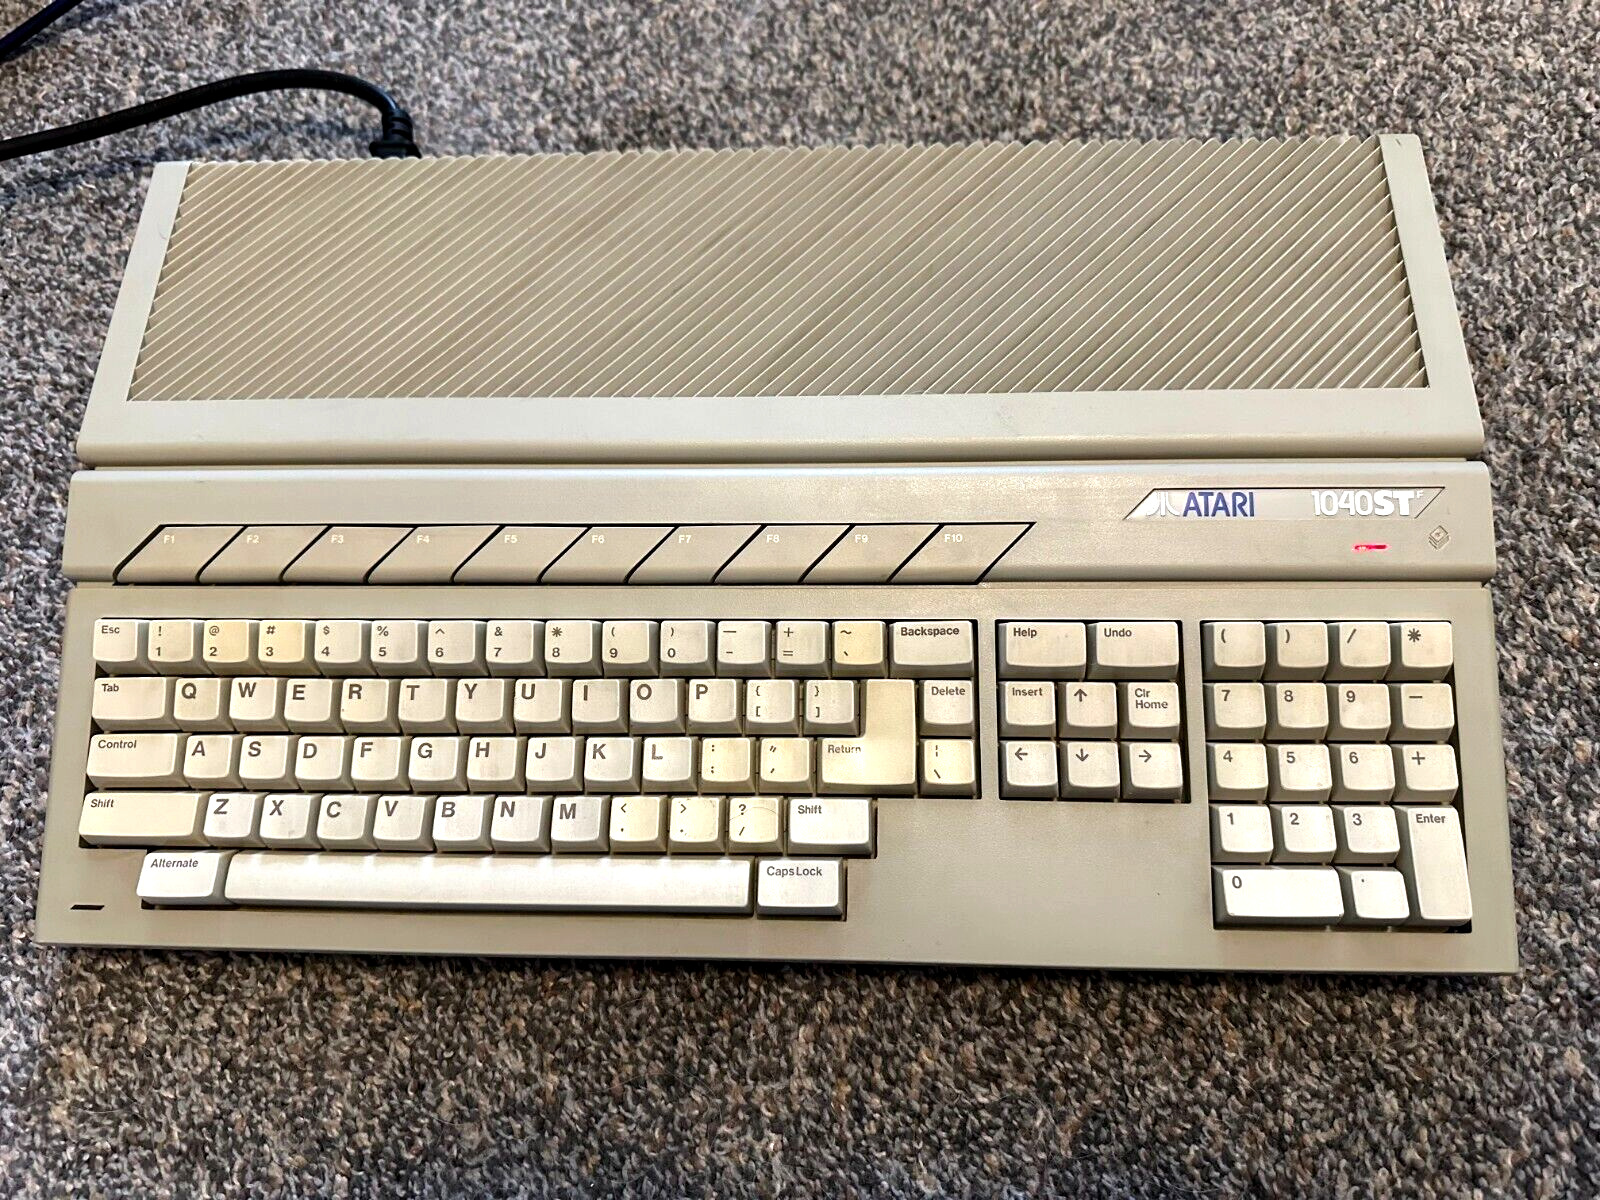 Vintage Atari 1040ST Computer Powers On